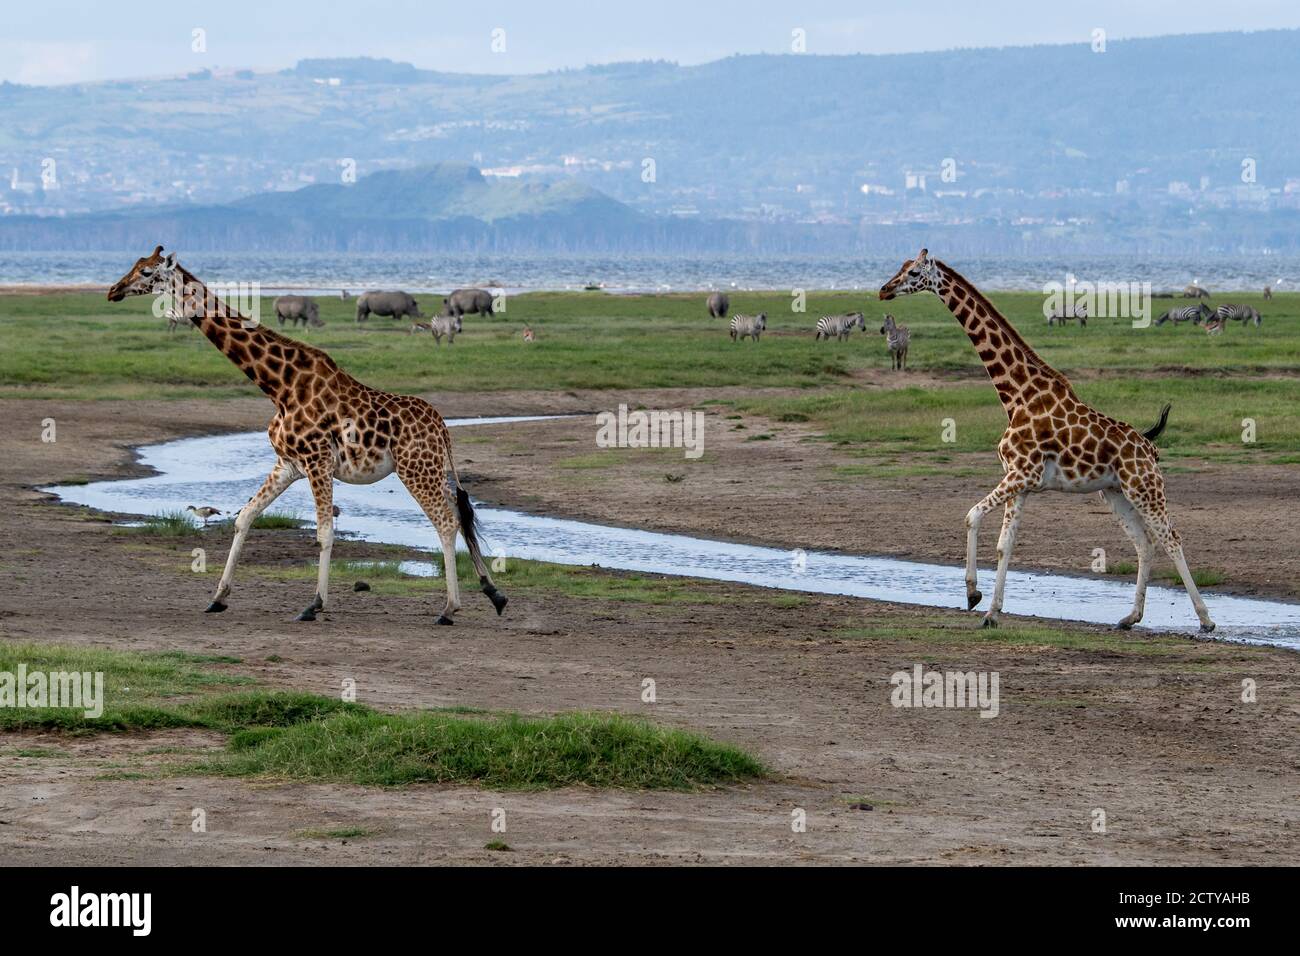 Girafe(s) réticulée(s) en voie de disparition (Giraffa camelopardalis) au Kenya, en Afrique Banque D'Images